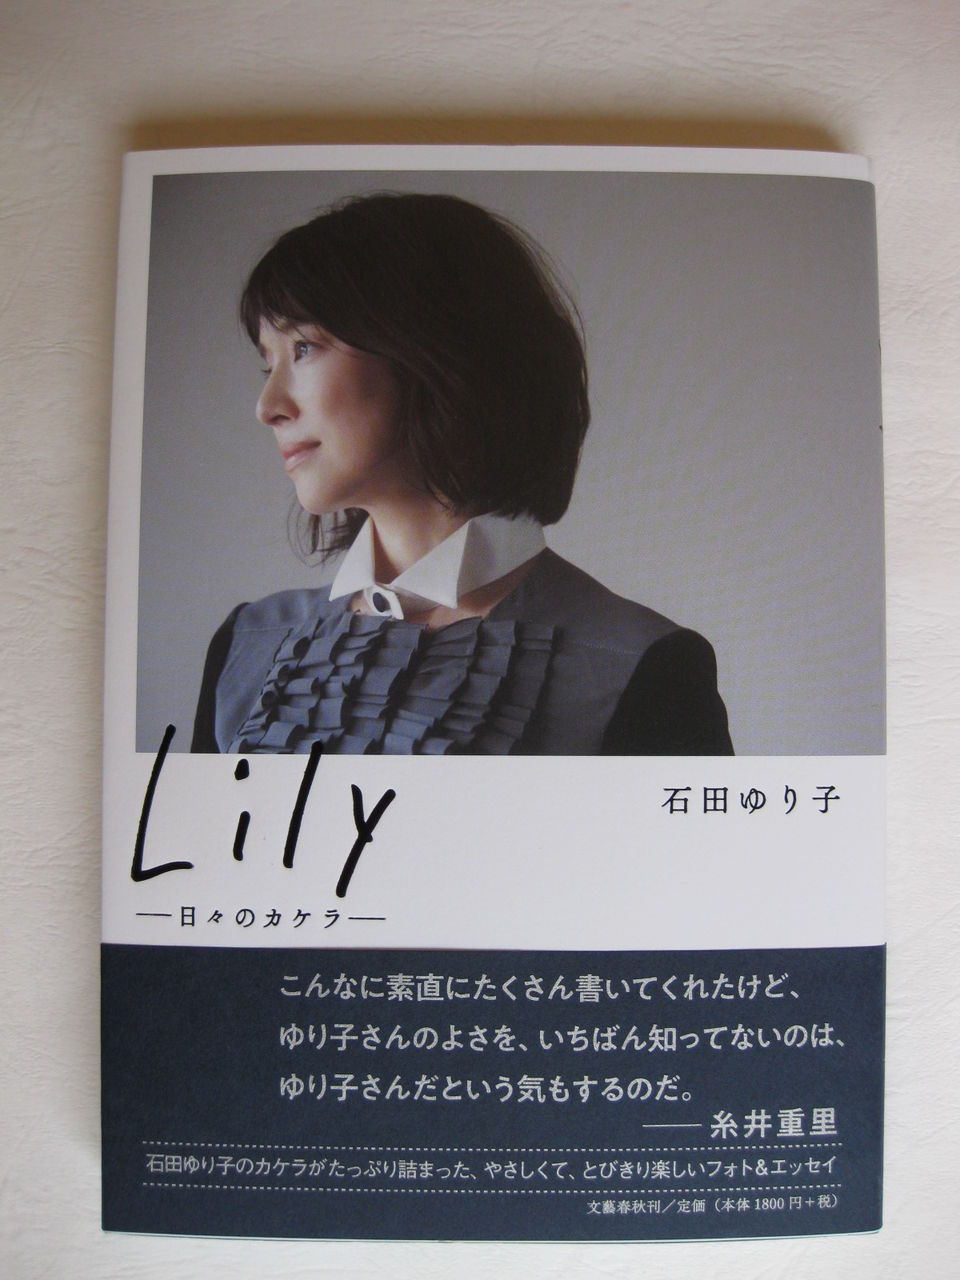 石田ゆり子さんのフォトエッセイ Lily 日々のカケラ 手仕事が好きな事務員の日々のくらし